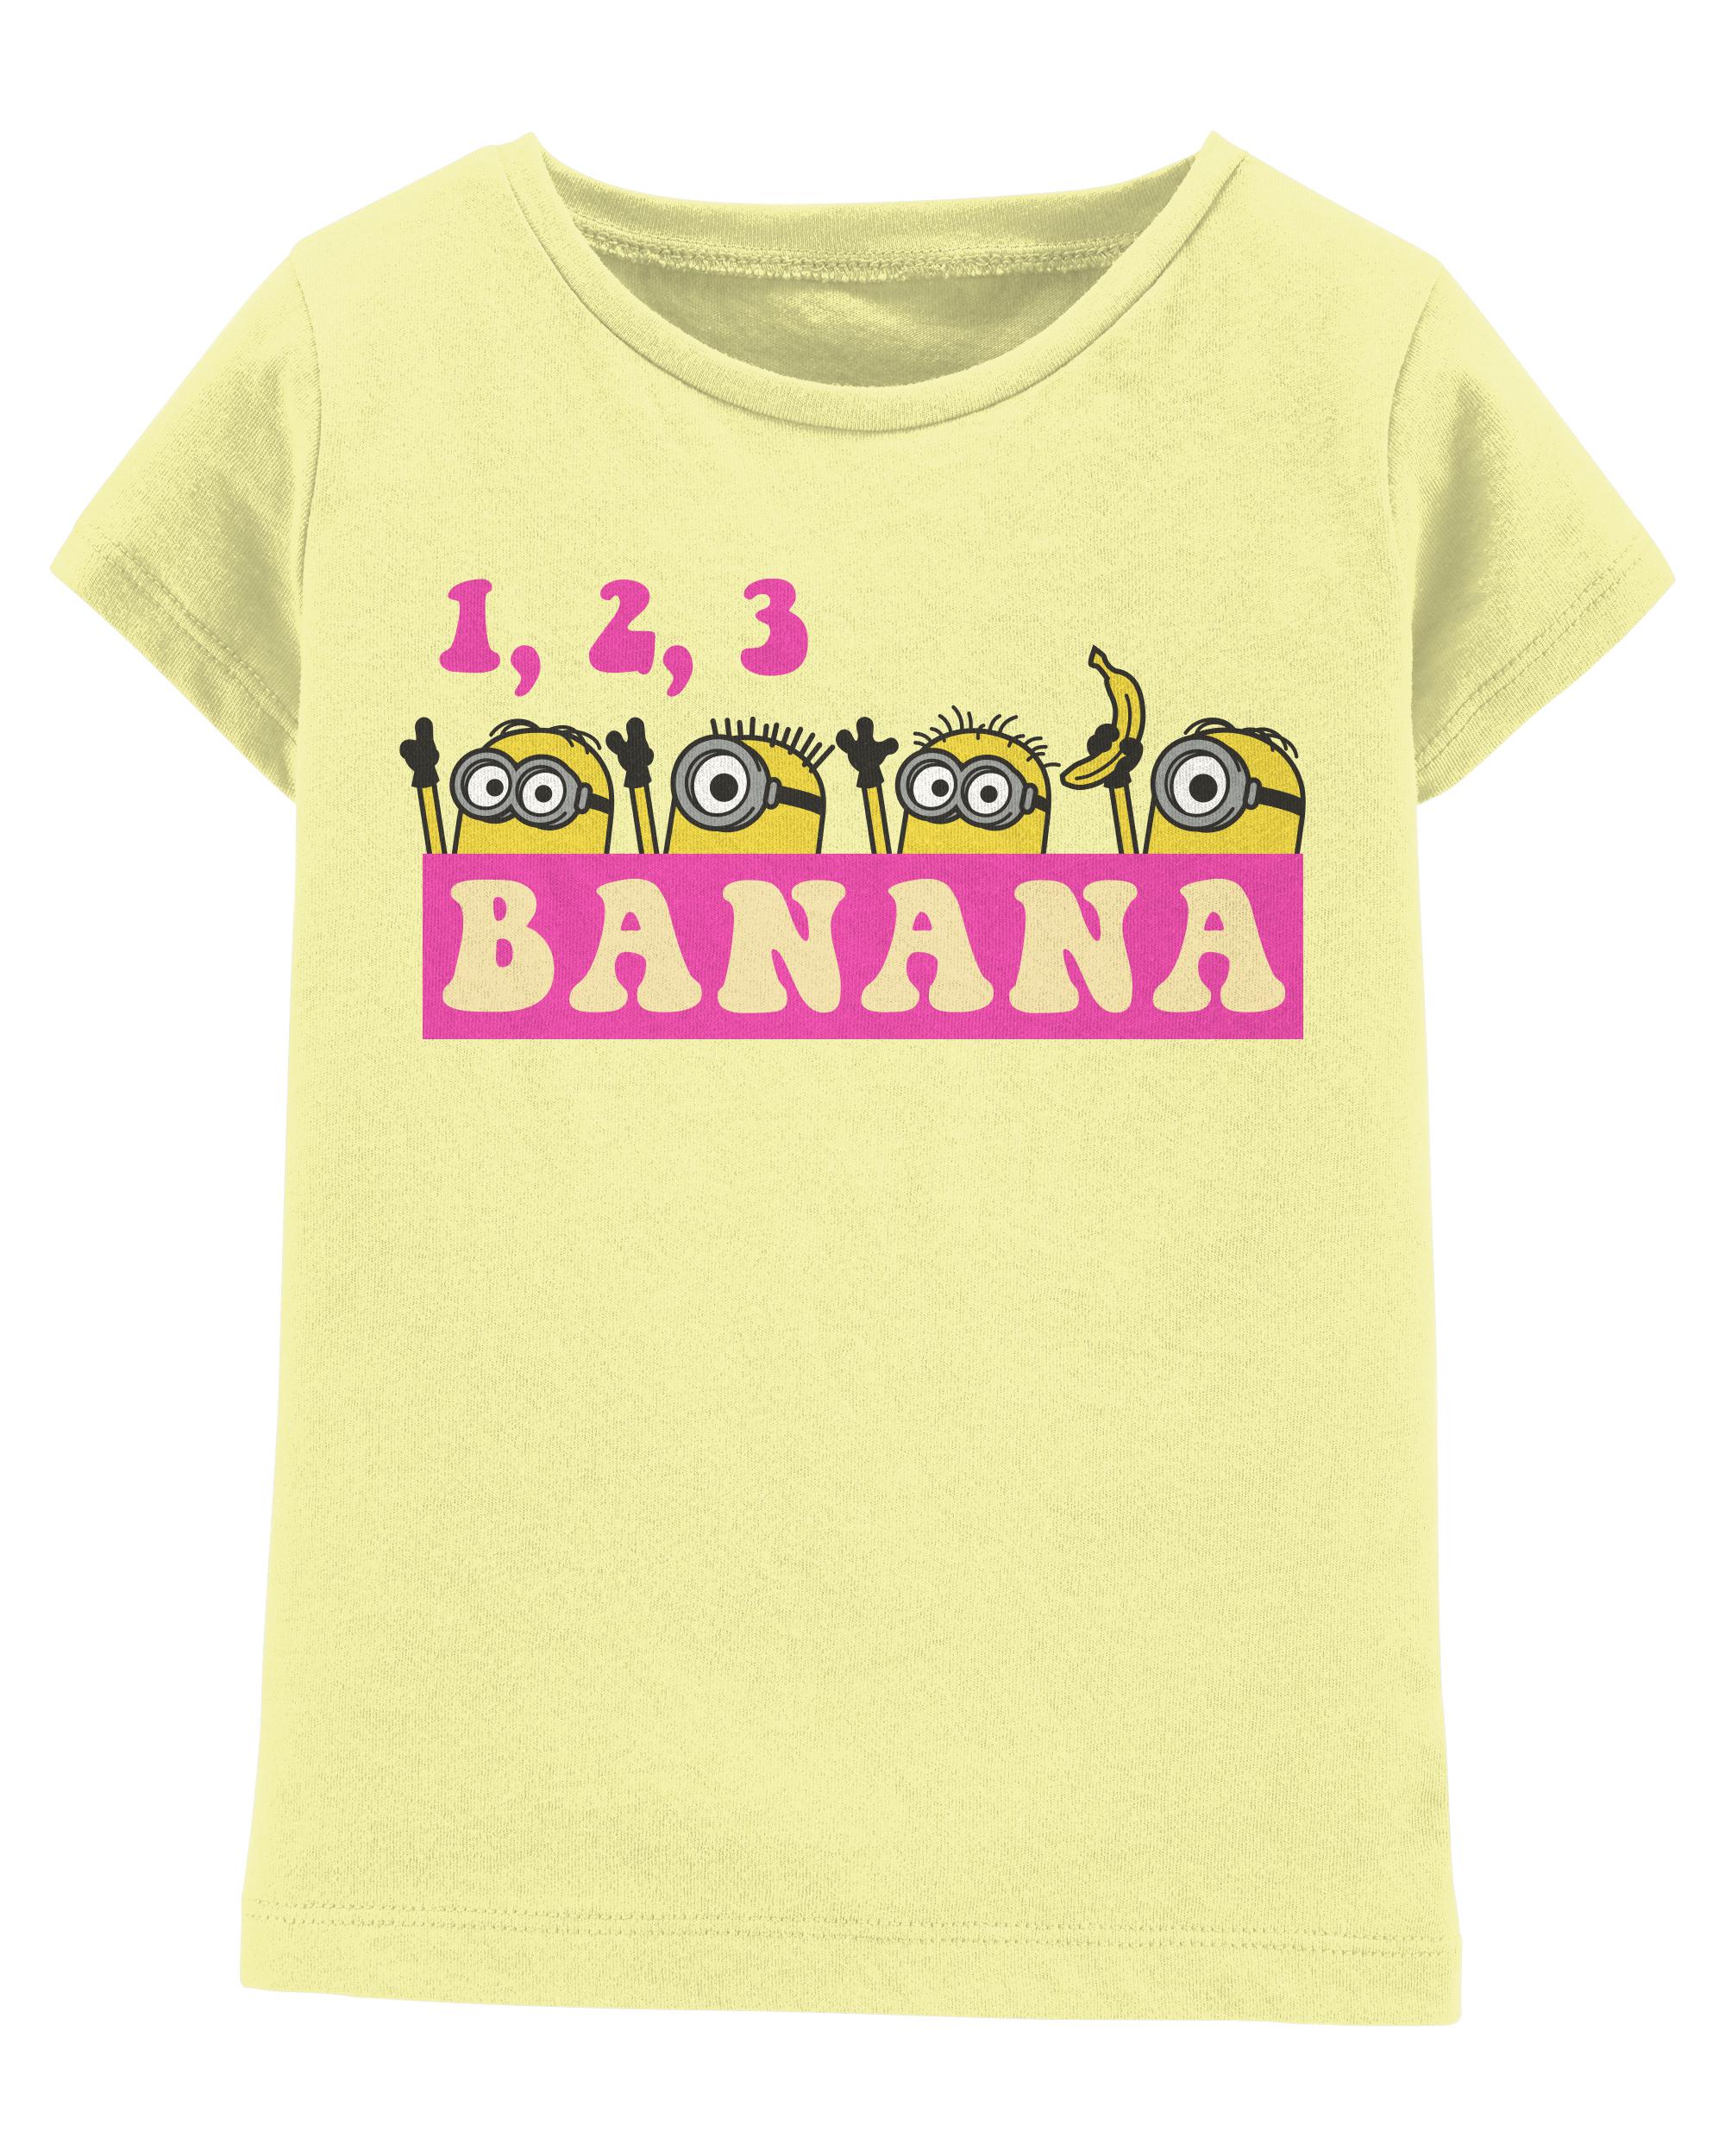 Minions Banana Tee